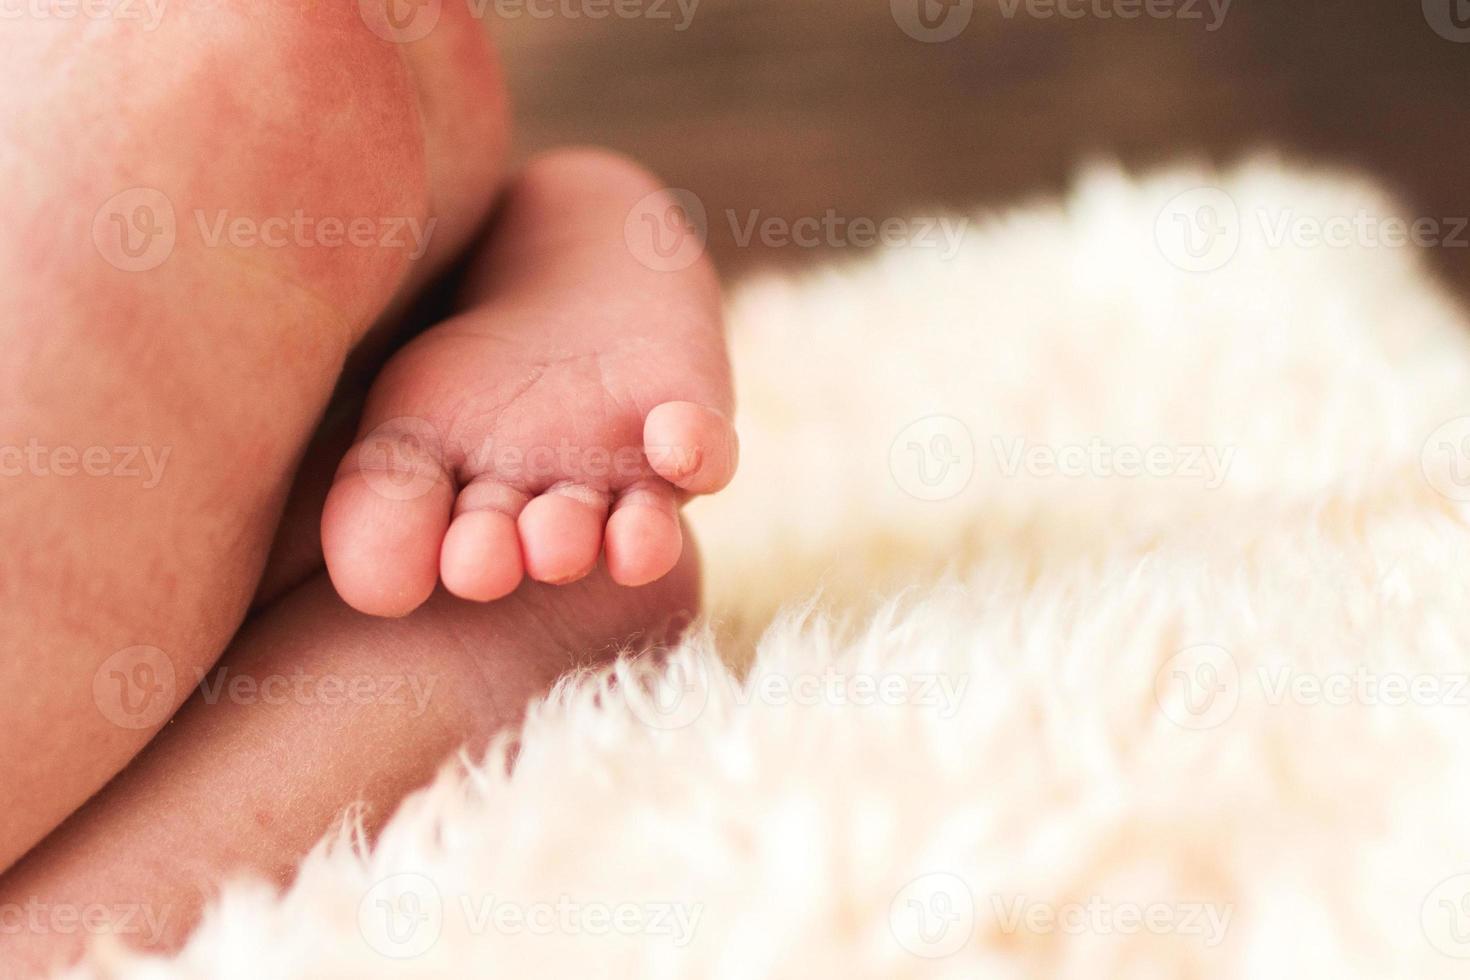 pies de bebé recién nacido. foto